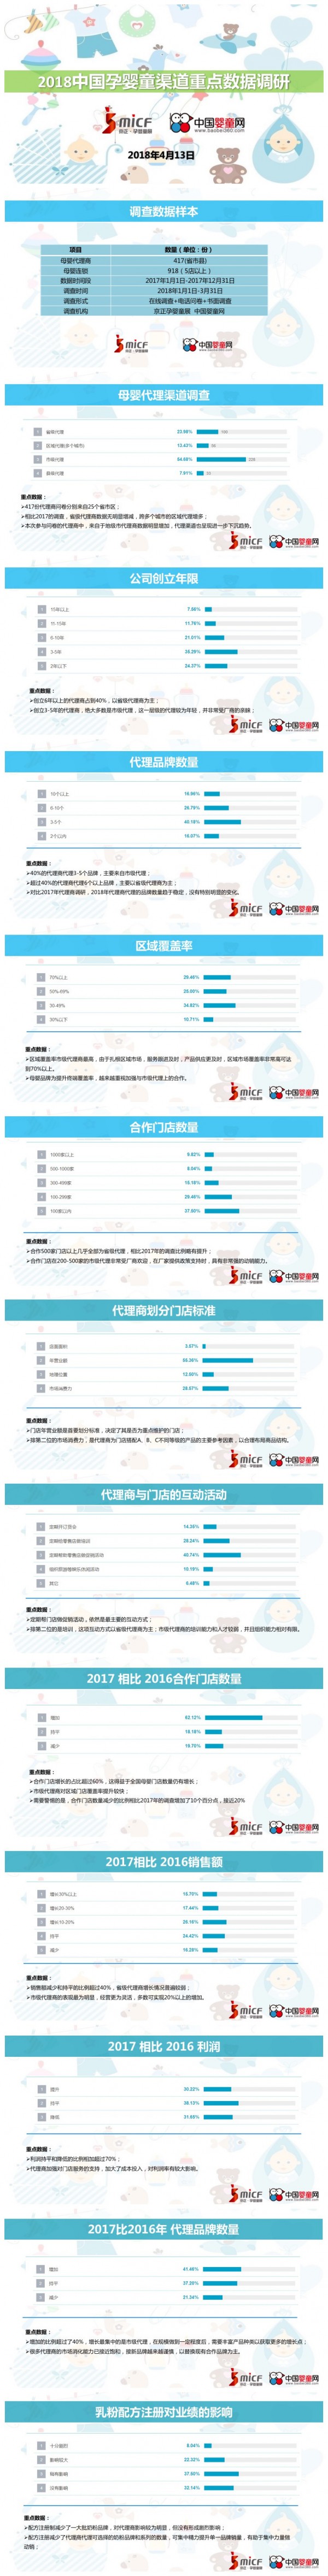 行业数据调研-2018中国母婴渠道市场调研数据发布汇总